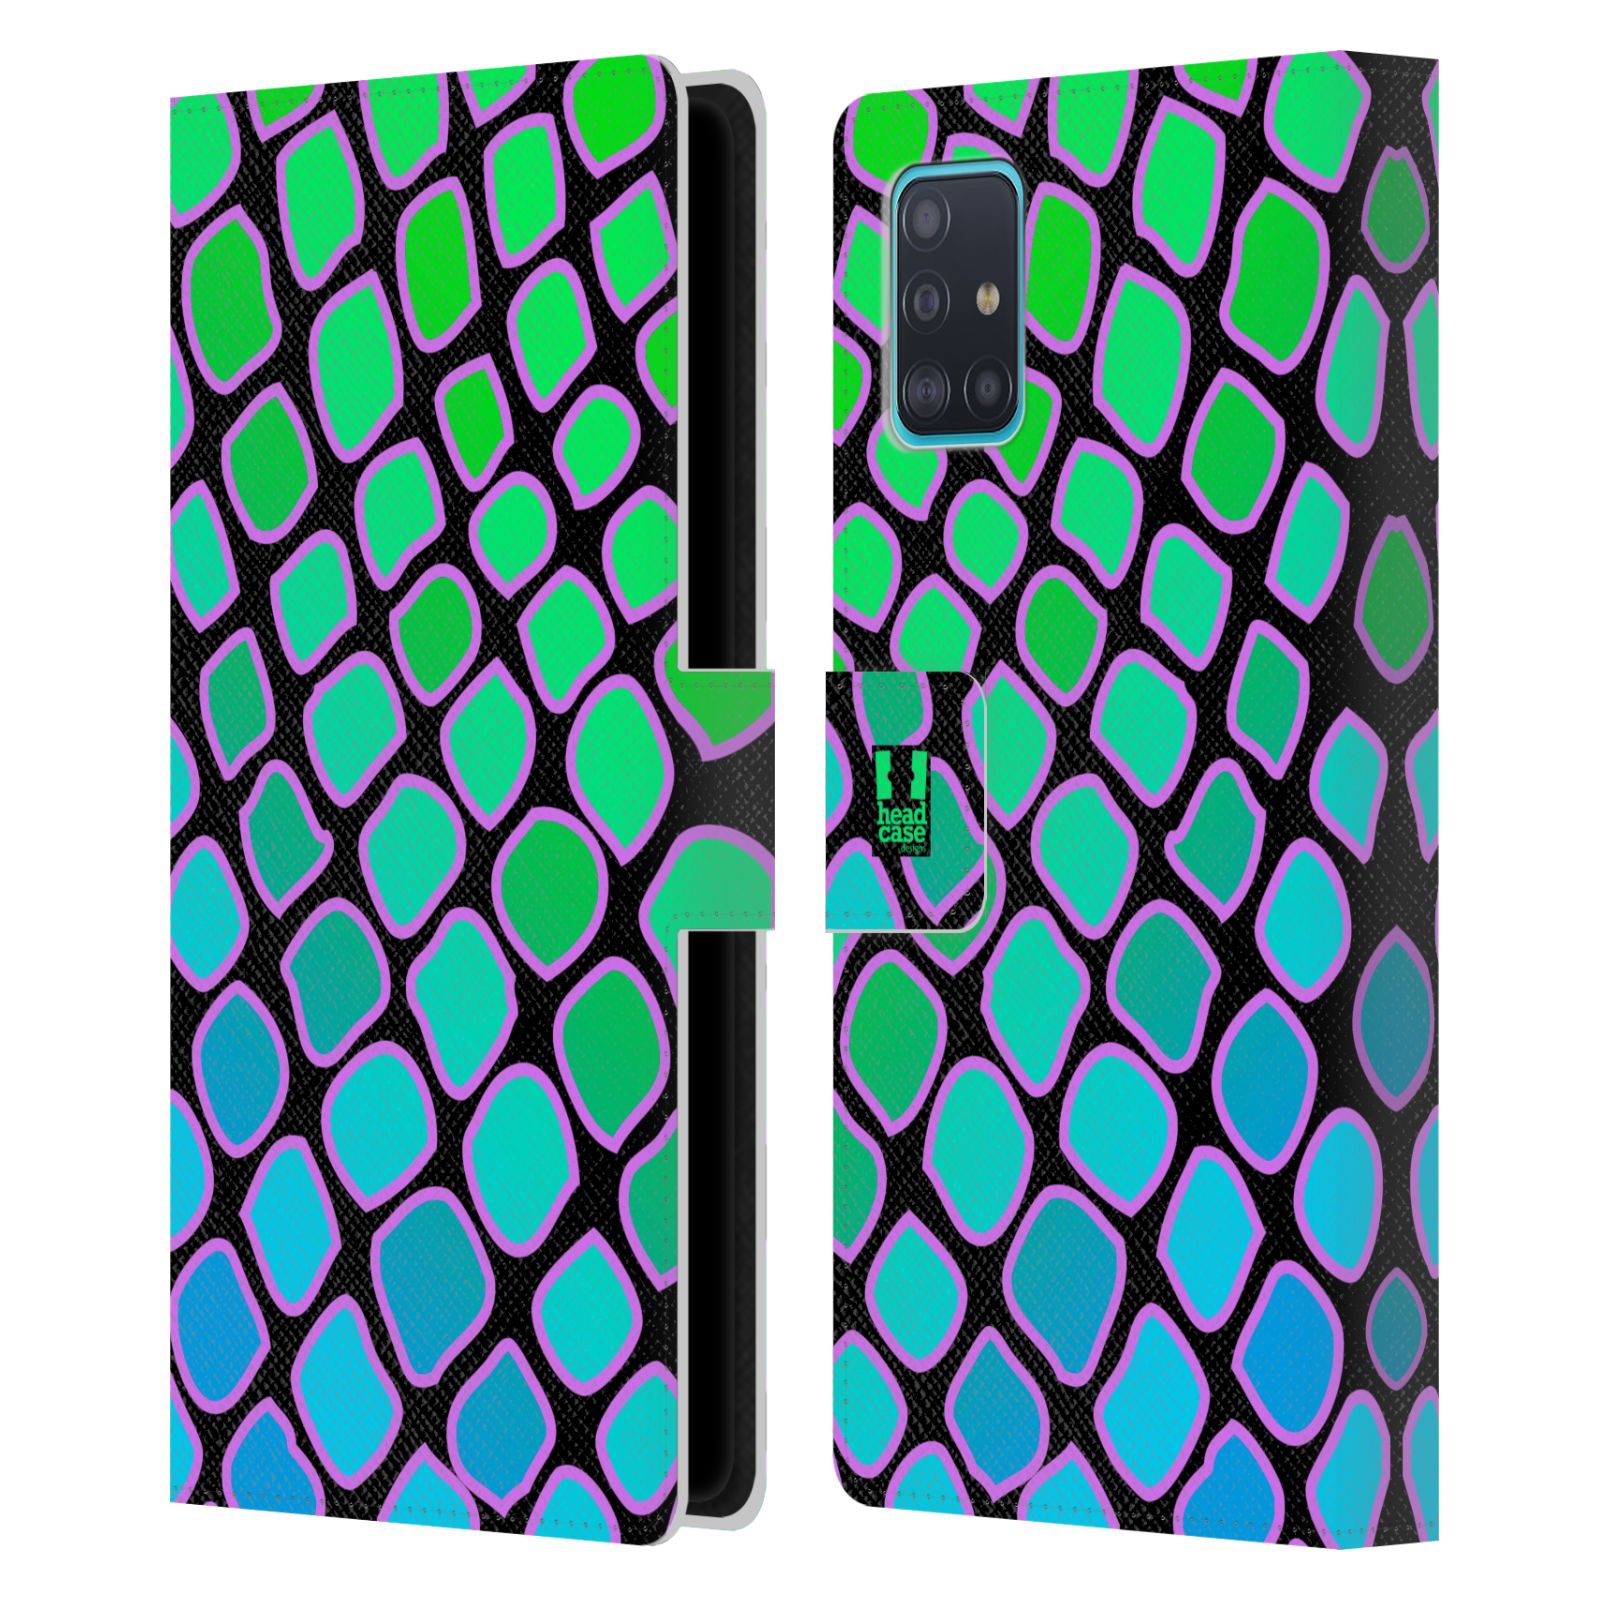 Pouzdro na mobil Samsung Galaxy A51 (A515F) Zvířecí barevné vzory vodní had modrá a zelená barva AQUA